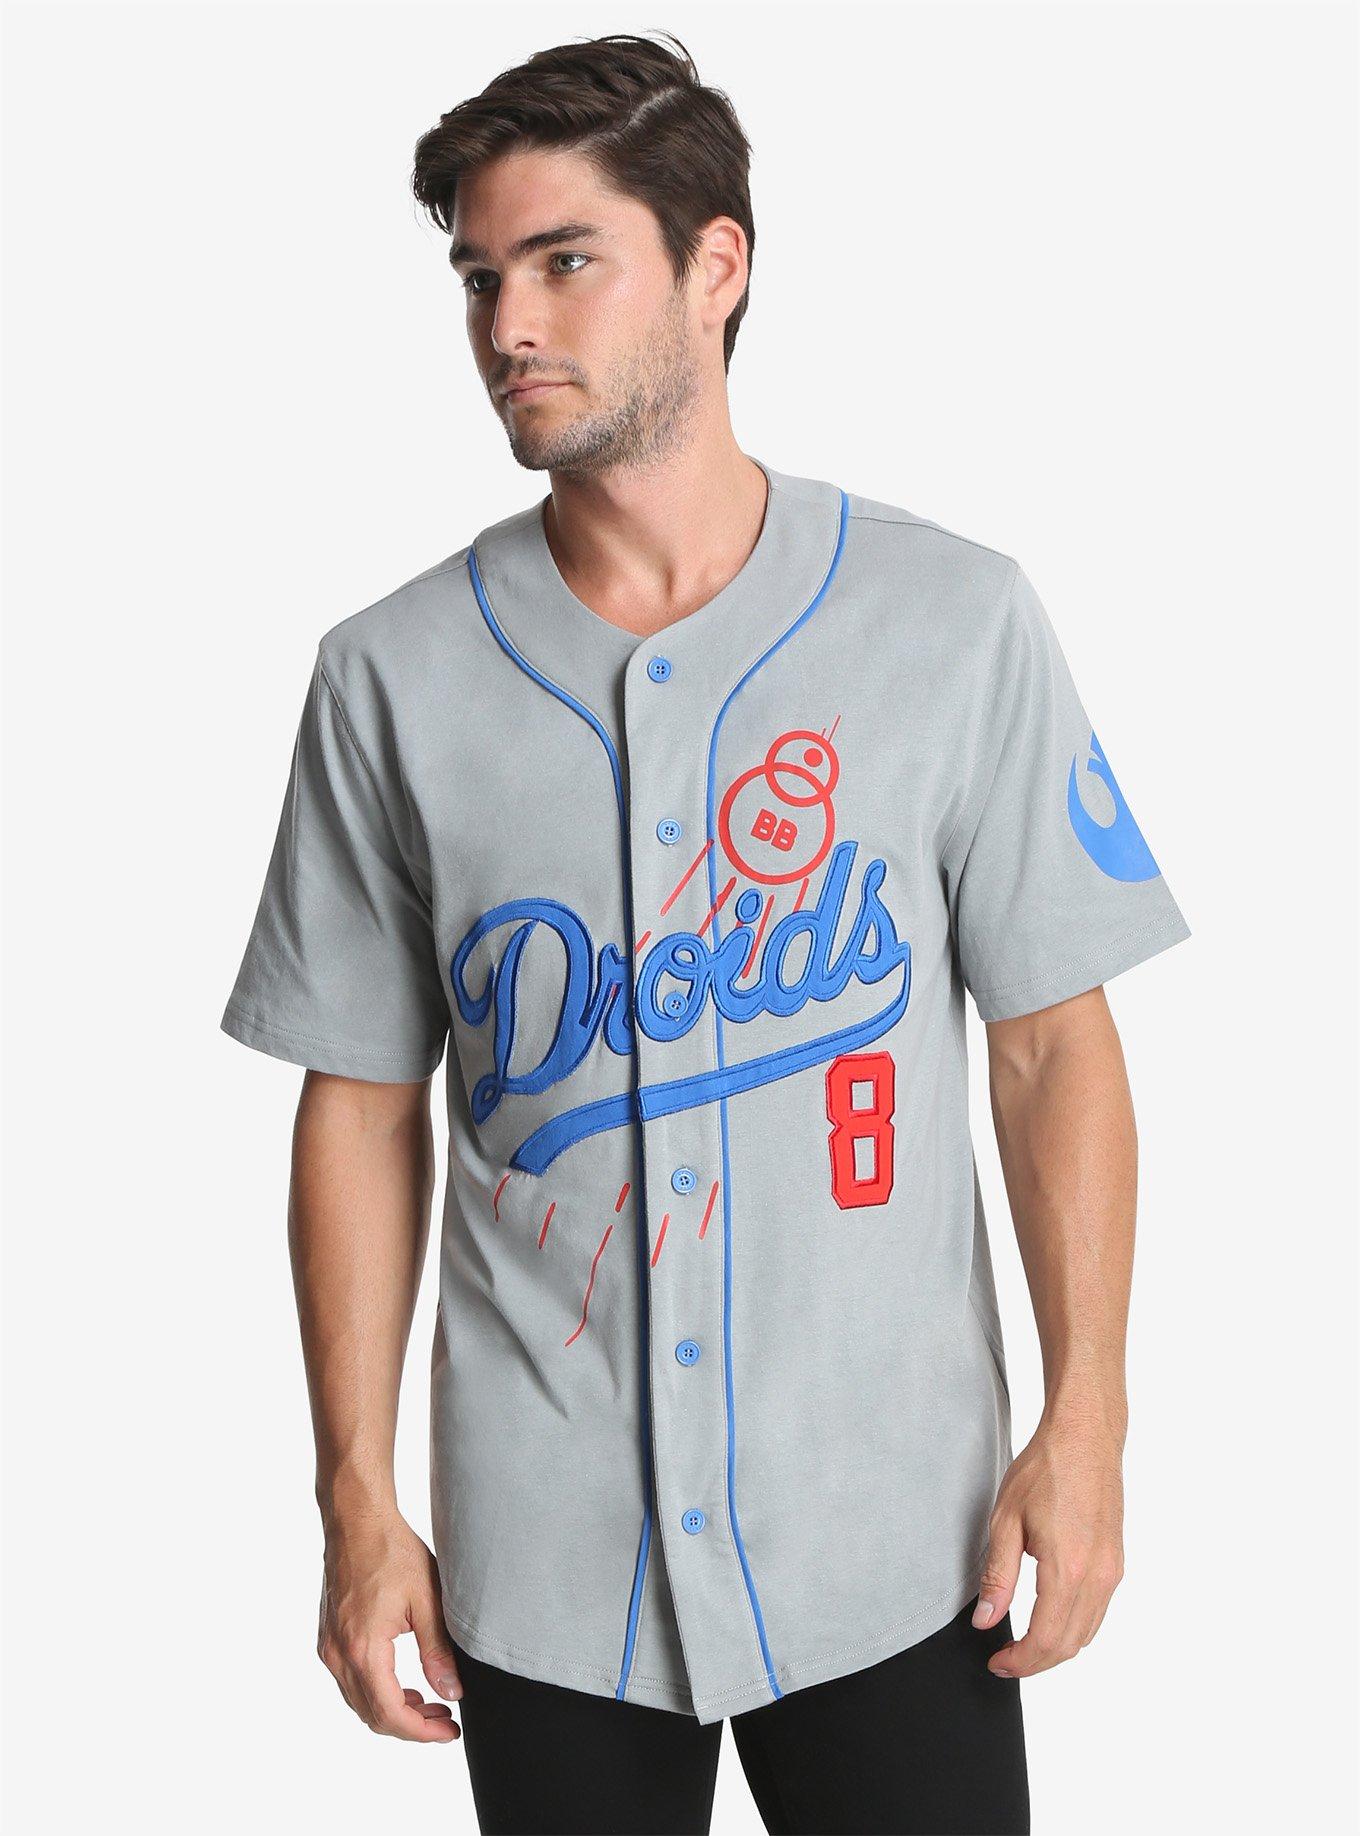 Baby Yoda Cute Dodgers Baseball Jersey Shirt - Owl Fashion Shop